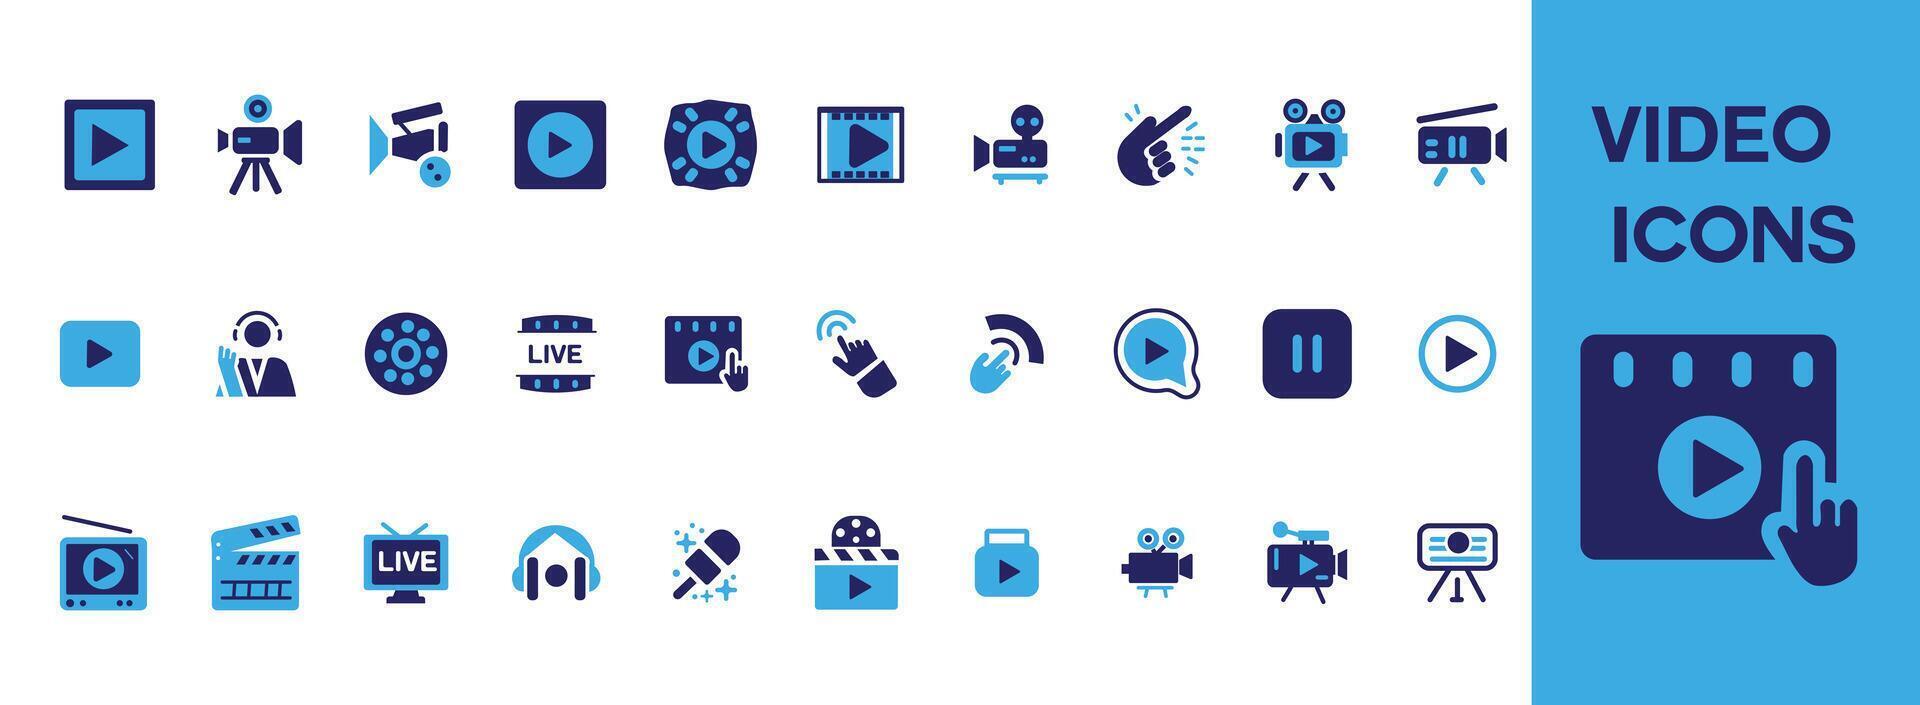 video ikon uppsättning. som innehåller kamera, spela, paus, media, uppkopplad video, leva, produktion, spelare, film och bio ikoner. fast ikon samling. vektor